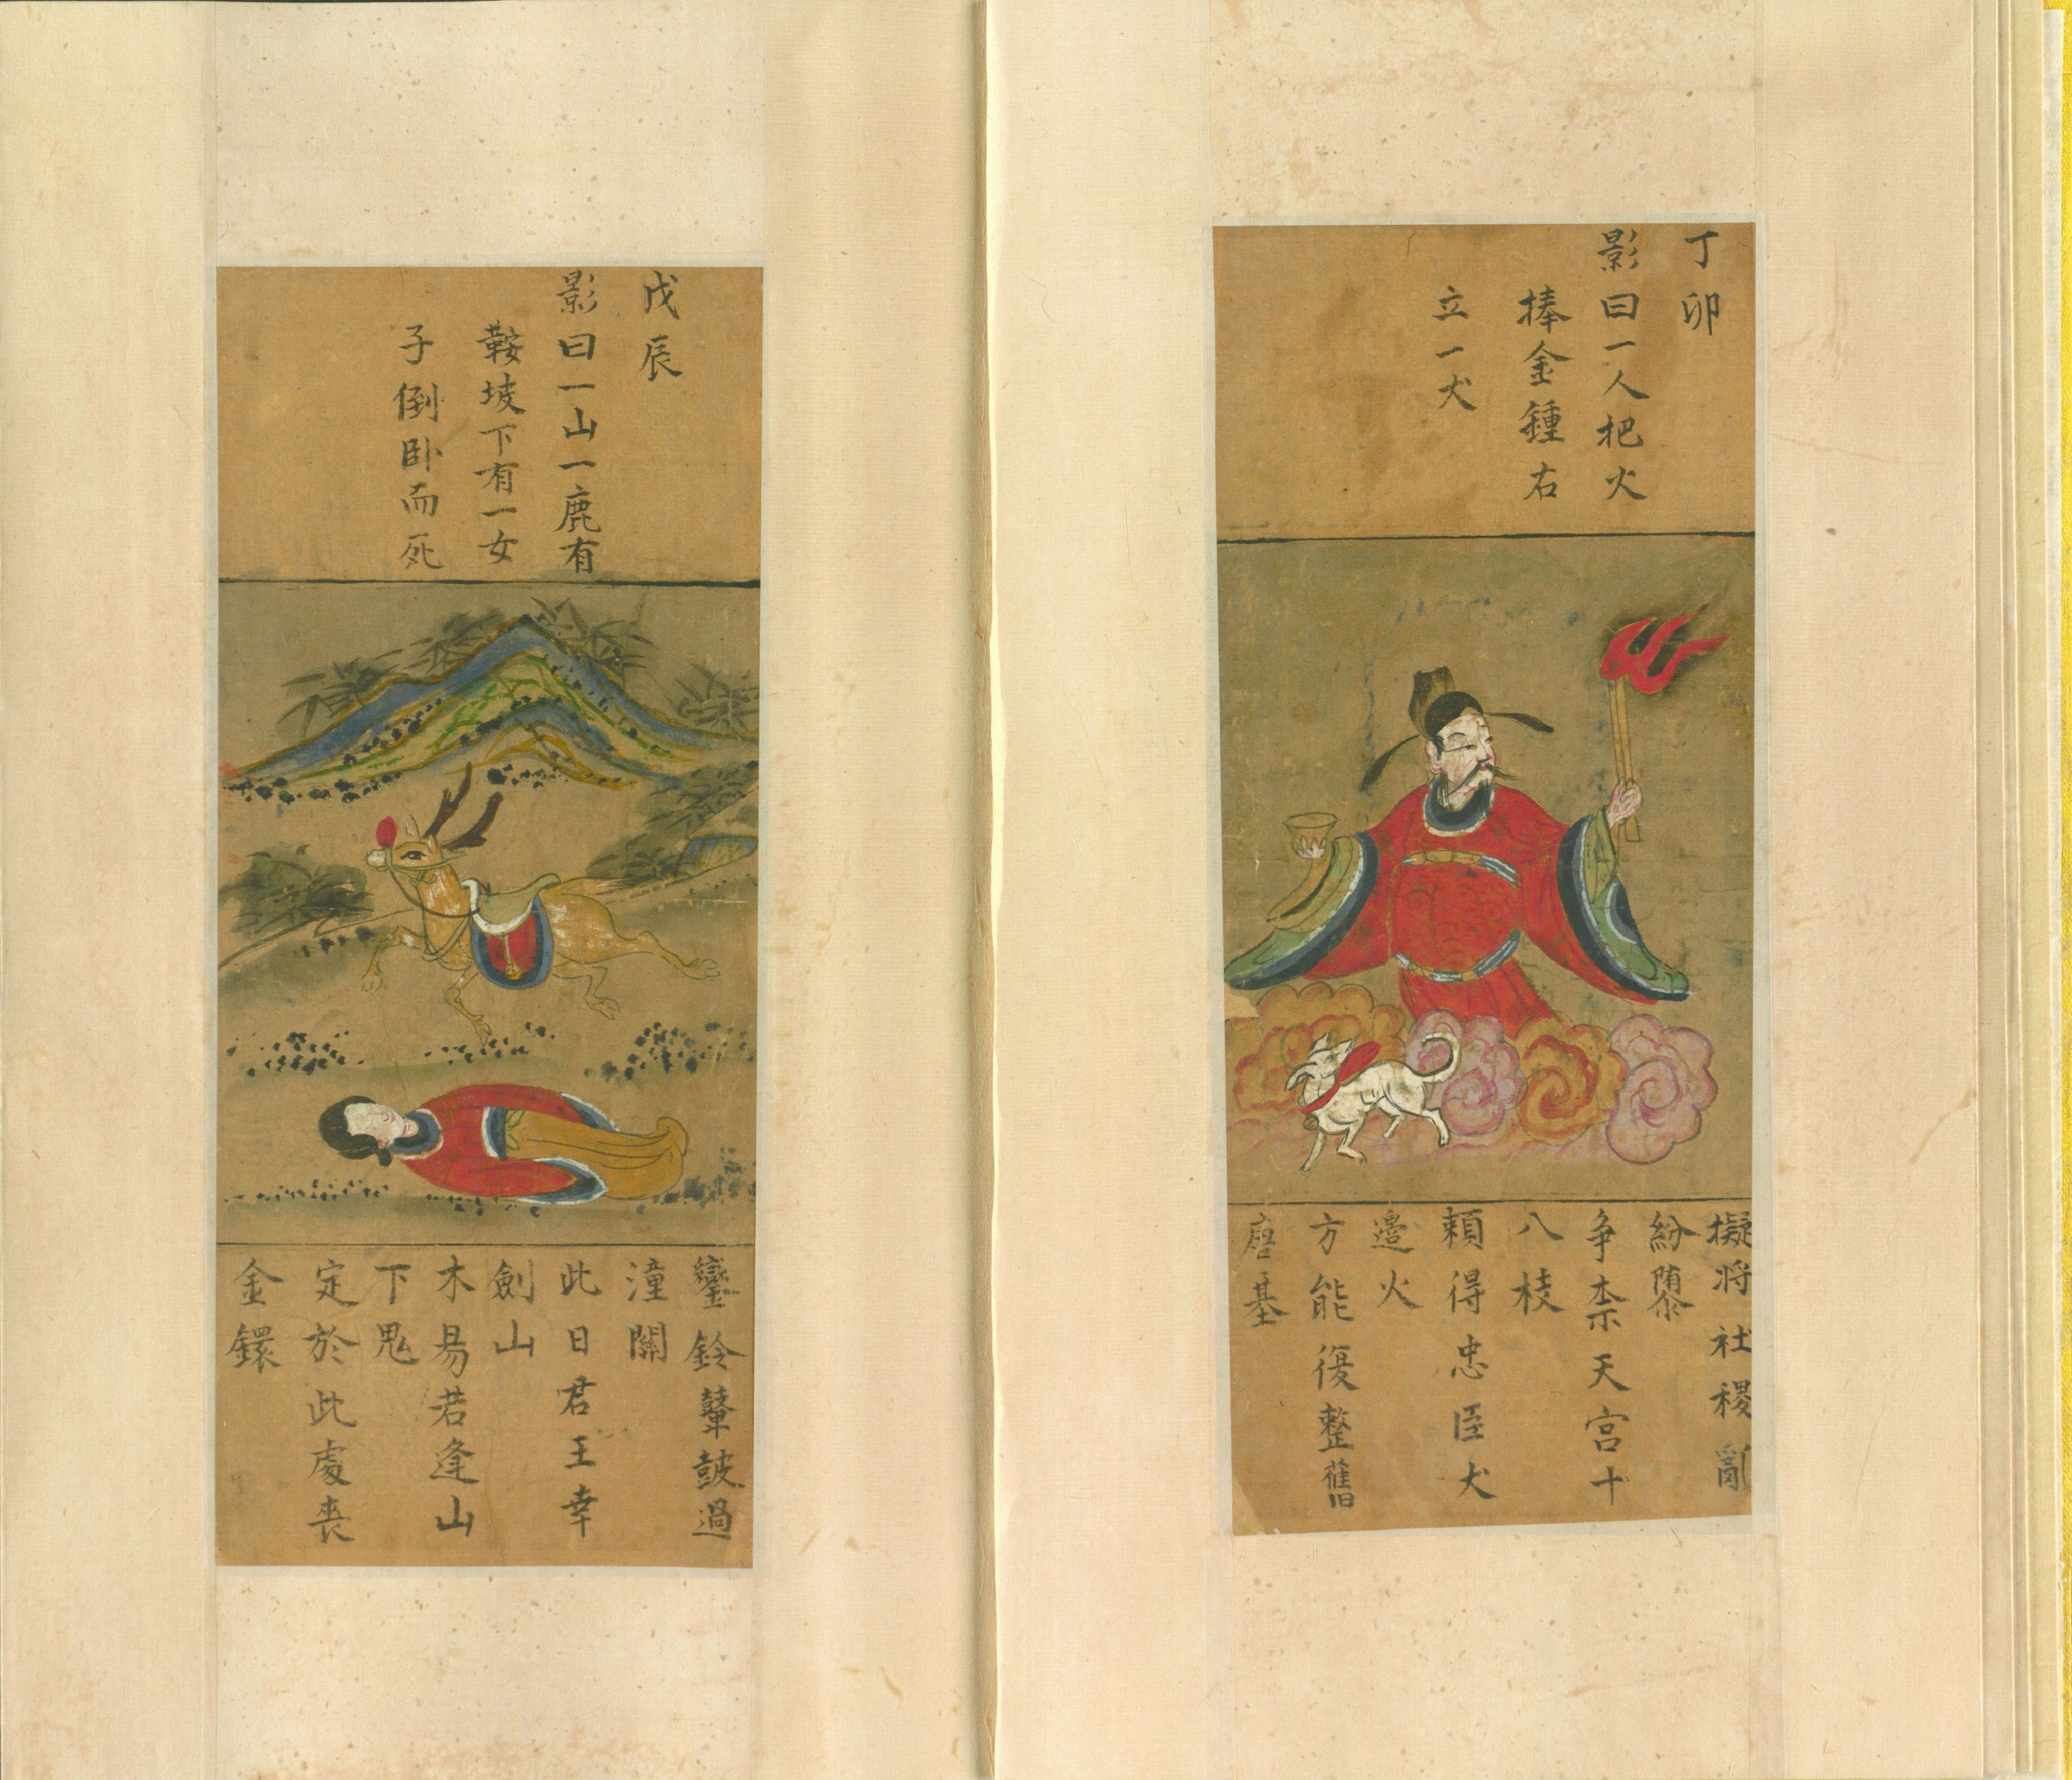 推背图-清抄彩绘本-现藏于台北国家图书馆